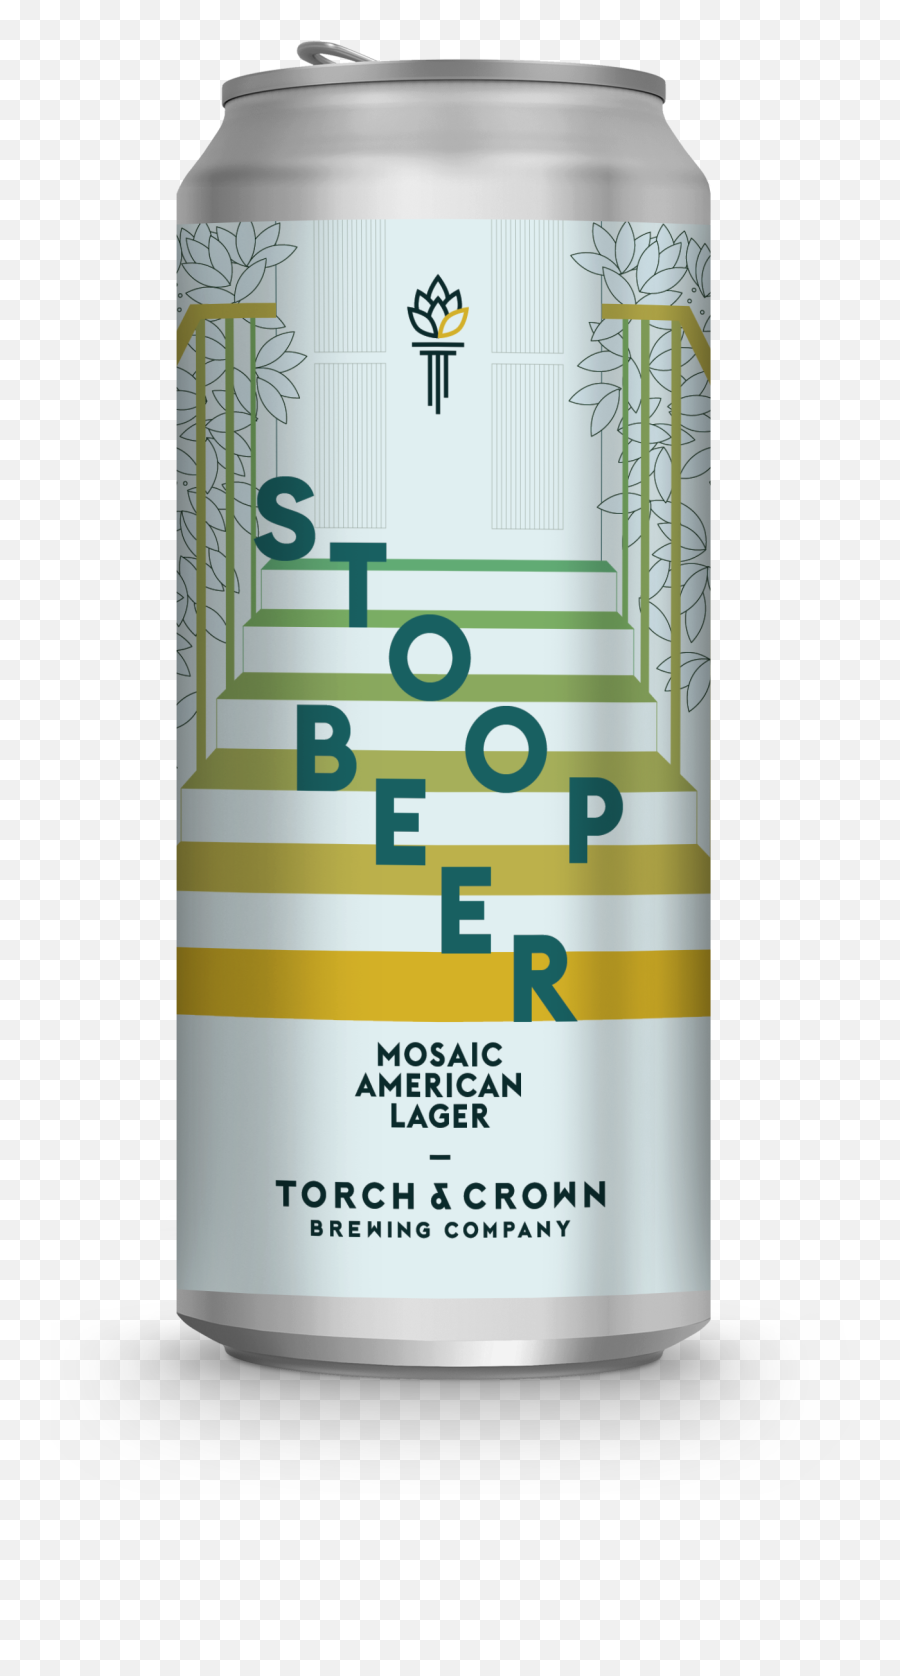 Stoop Beer Mosaic U2014 Torch U0026 Crown Brewing Company Emoji,Beer Can Png